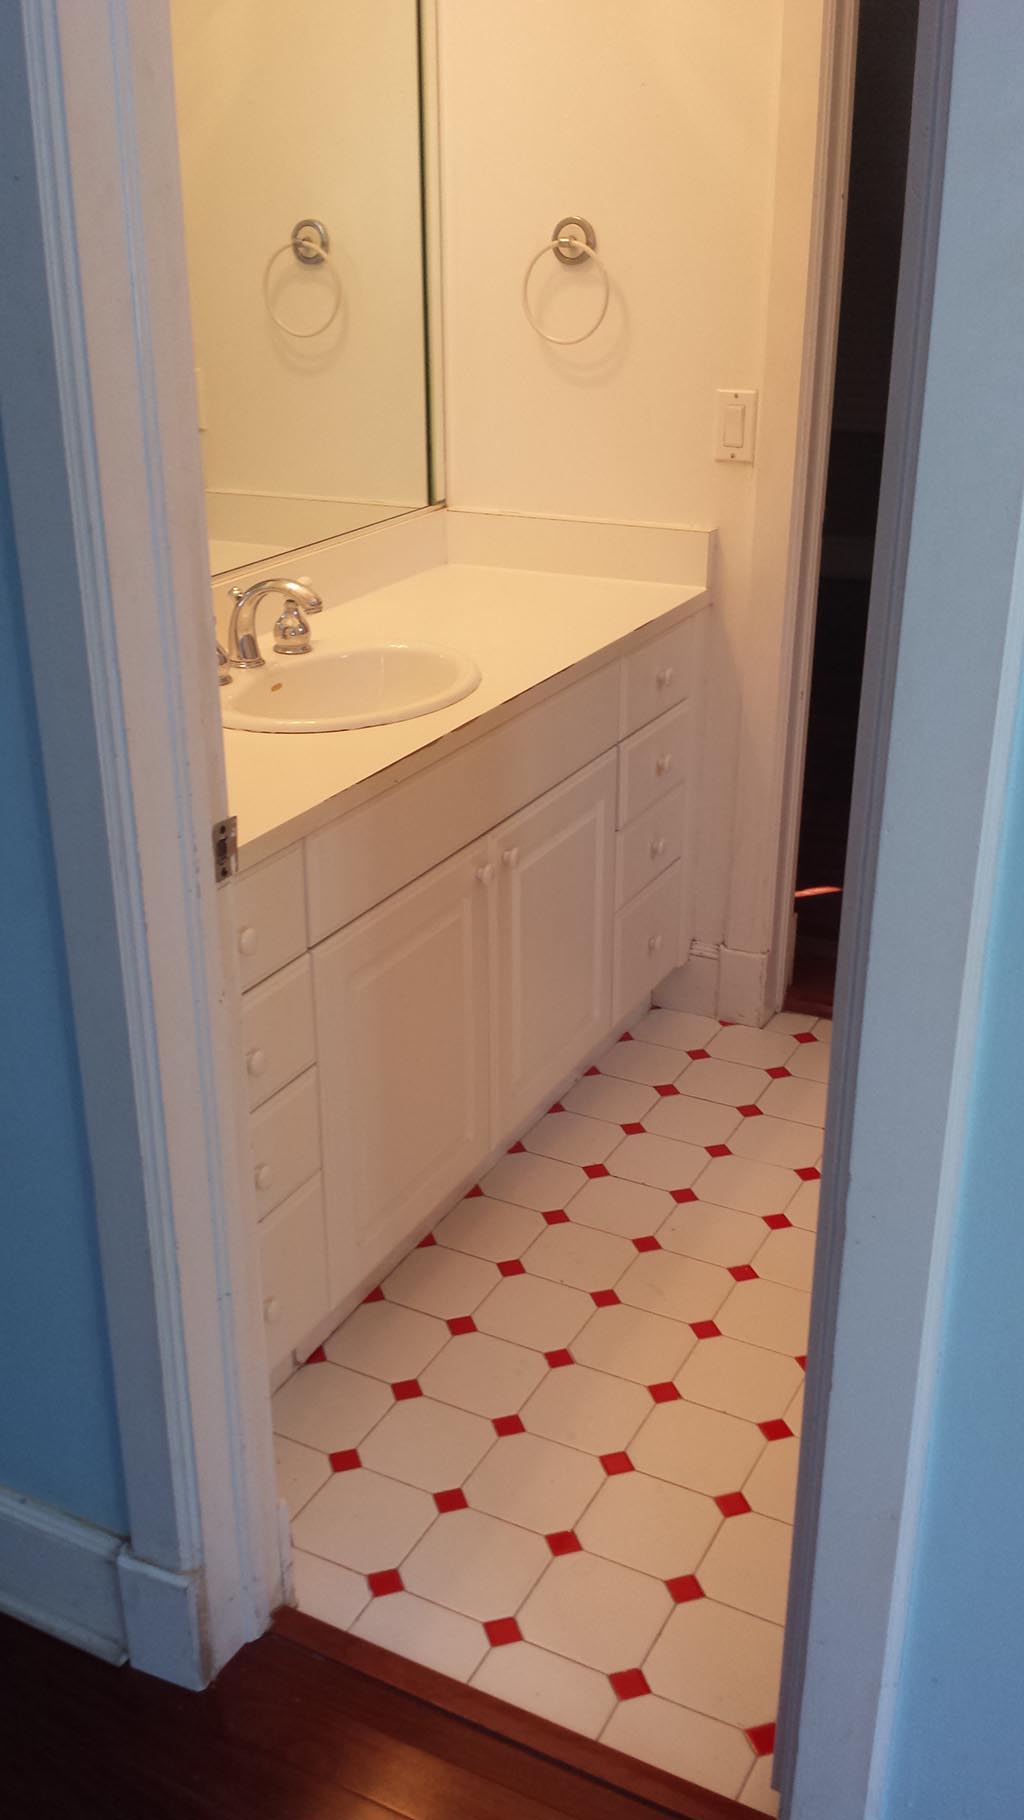 Original Bathroom Vanity and Tile Floor